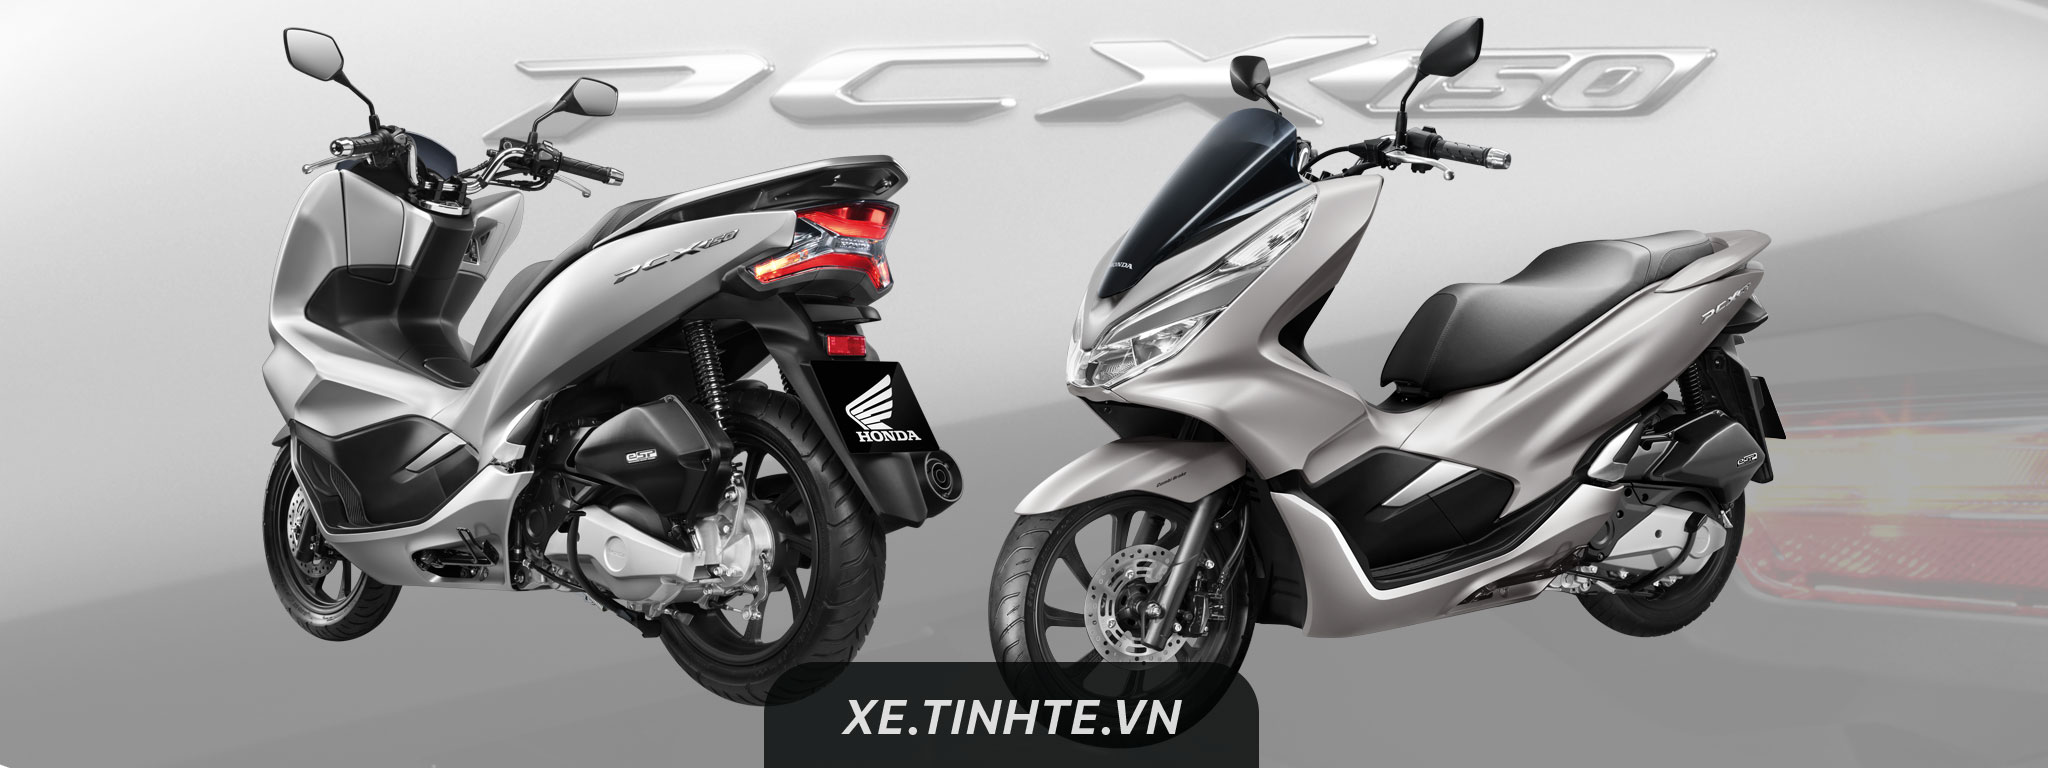 Honda Việt Nam phân phối PCX 2018 từ ngày 15/01/2018, thêm bản 150cc, chưa có giá bán